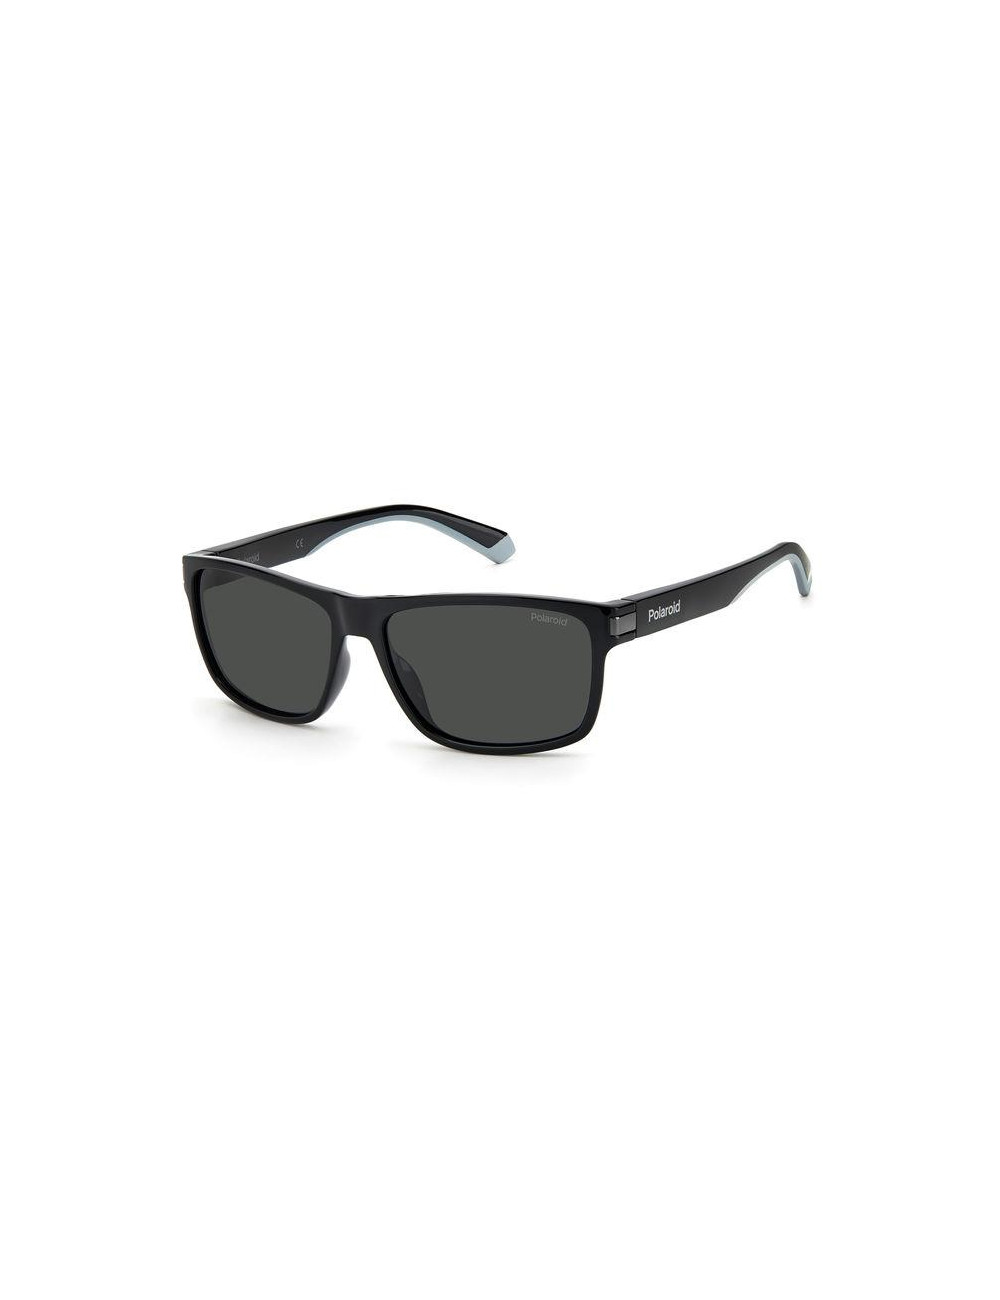 https://www.otticamauro.biz/39557-large_default/polaroid-pld-2121s-men-polarized-sunglasses.jpg